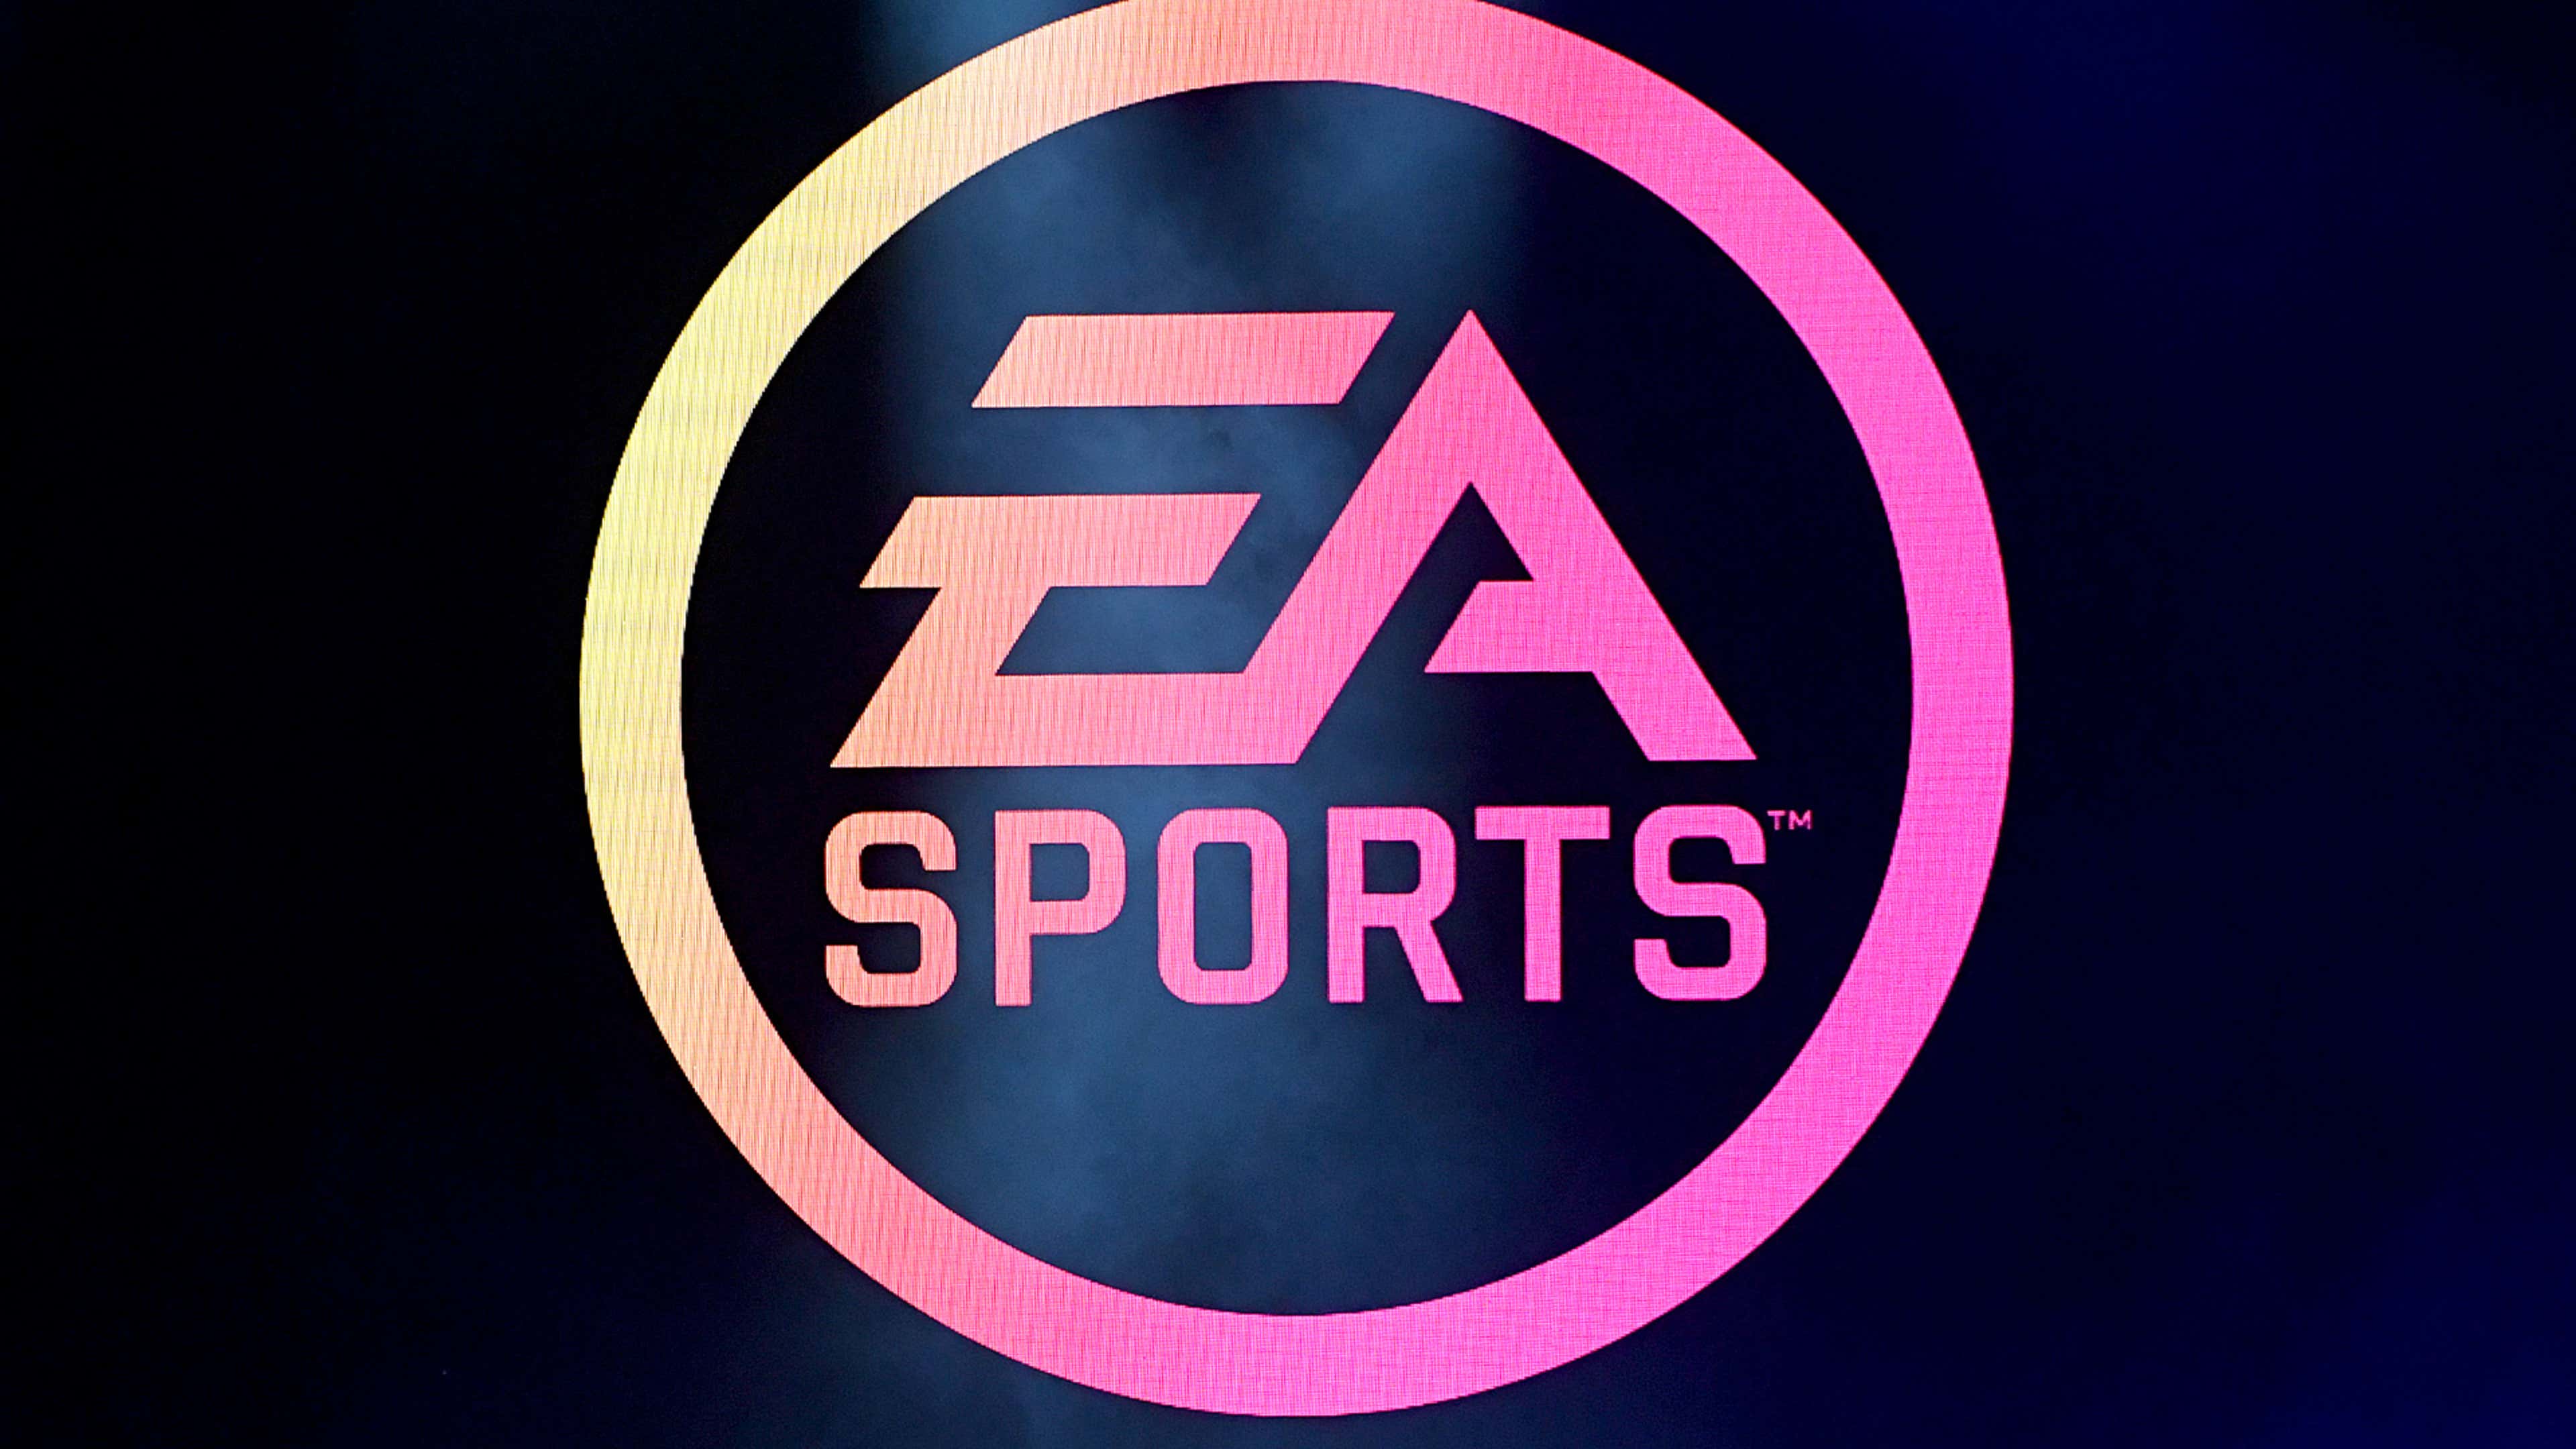 ea sports logo 2022